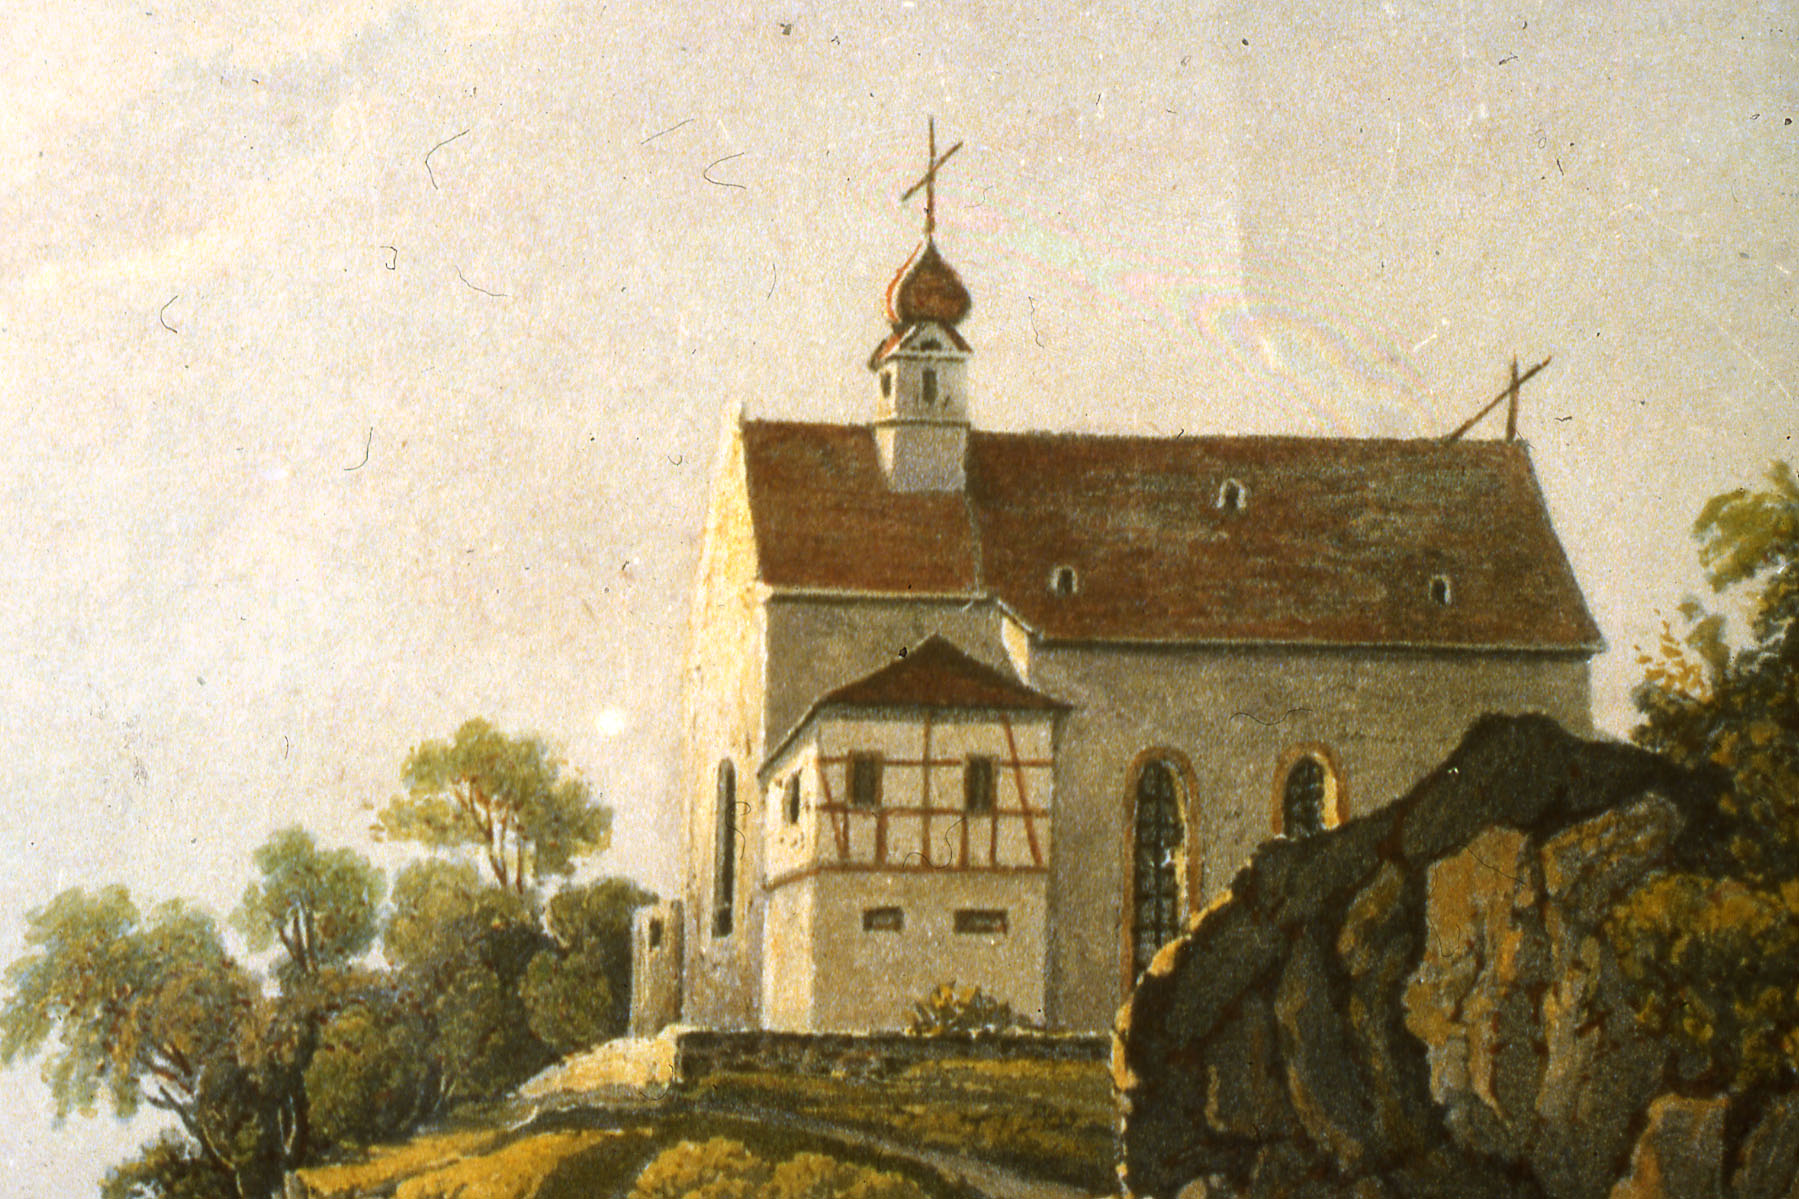 Rochuskapelle2_in Farbe